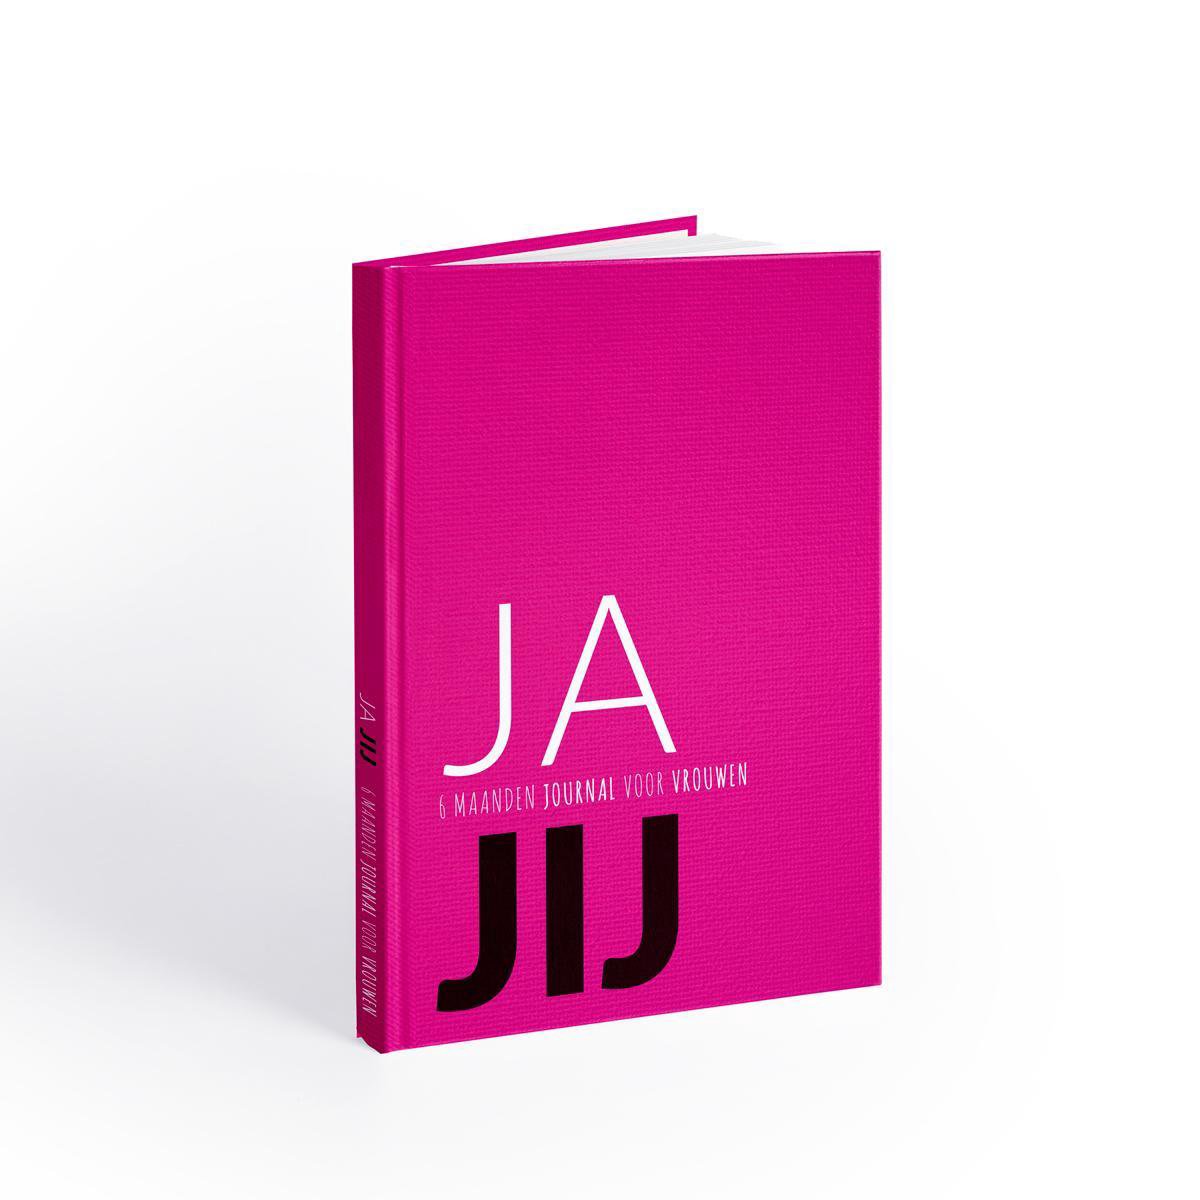 JA JIJ Journal - Invuldagboek/Journals - 6 maanden invuldagboek voor vrouwen - zelfontwikkeling & doelen stellen